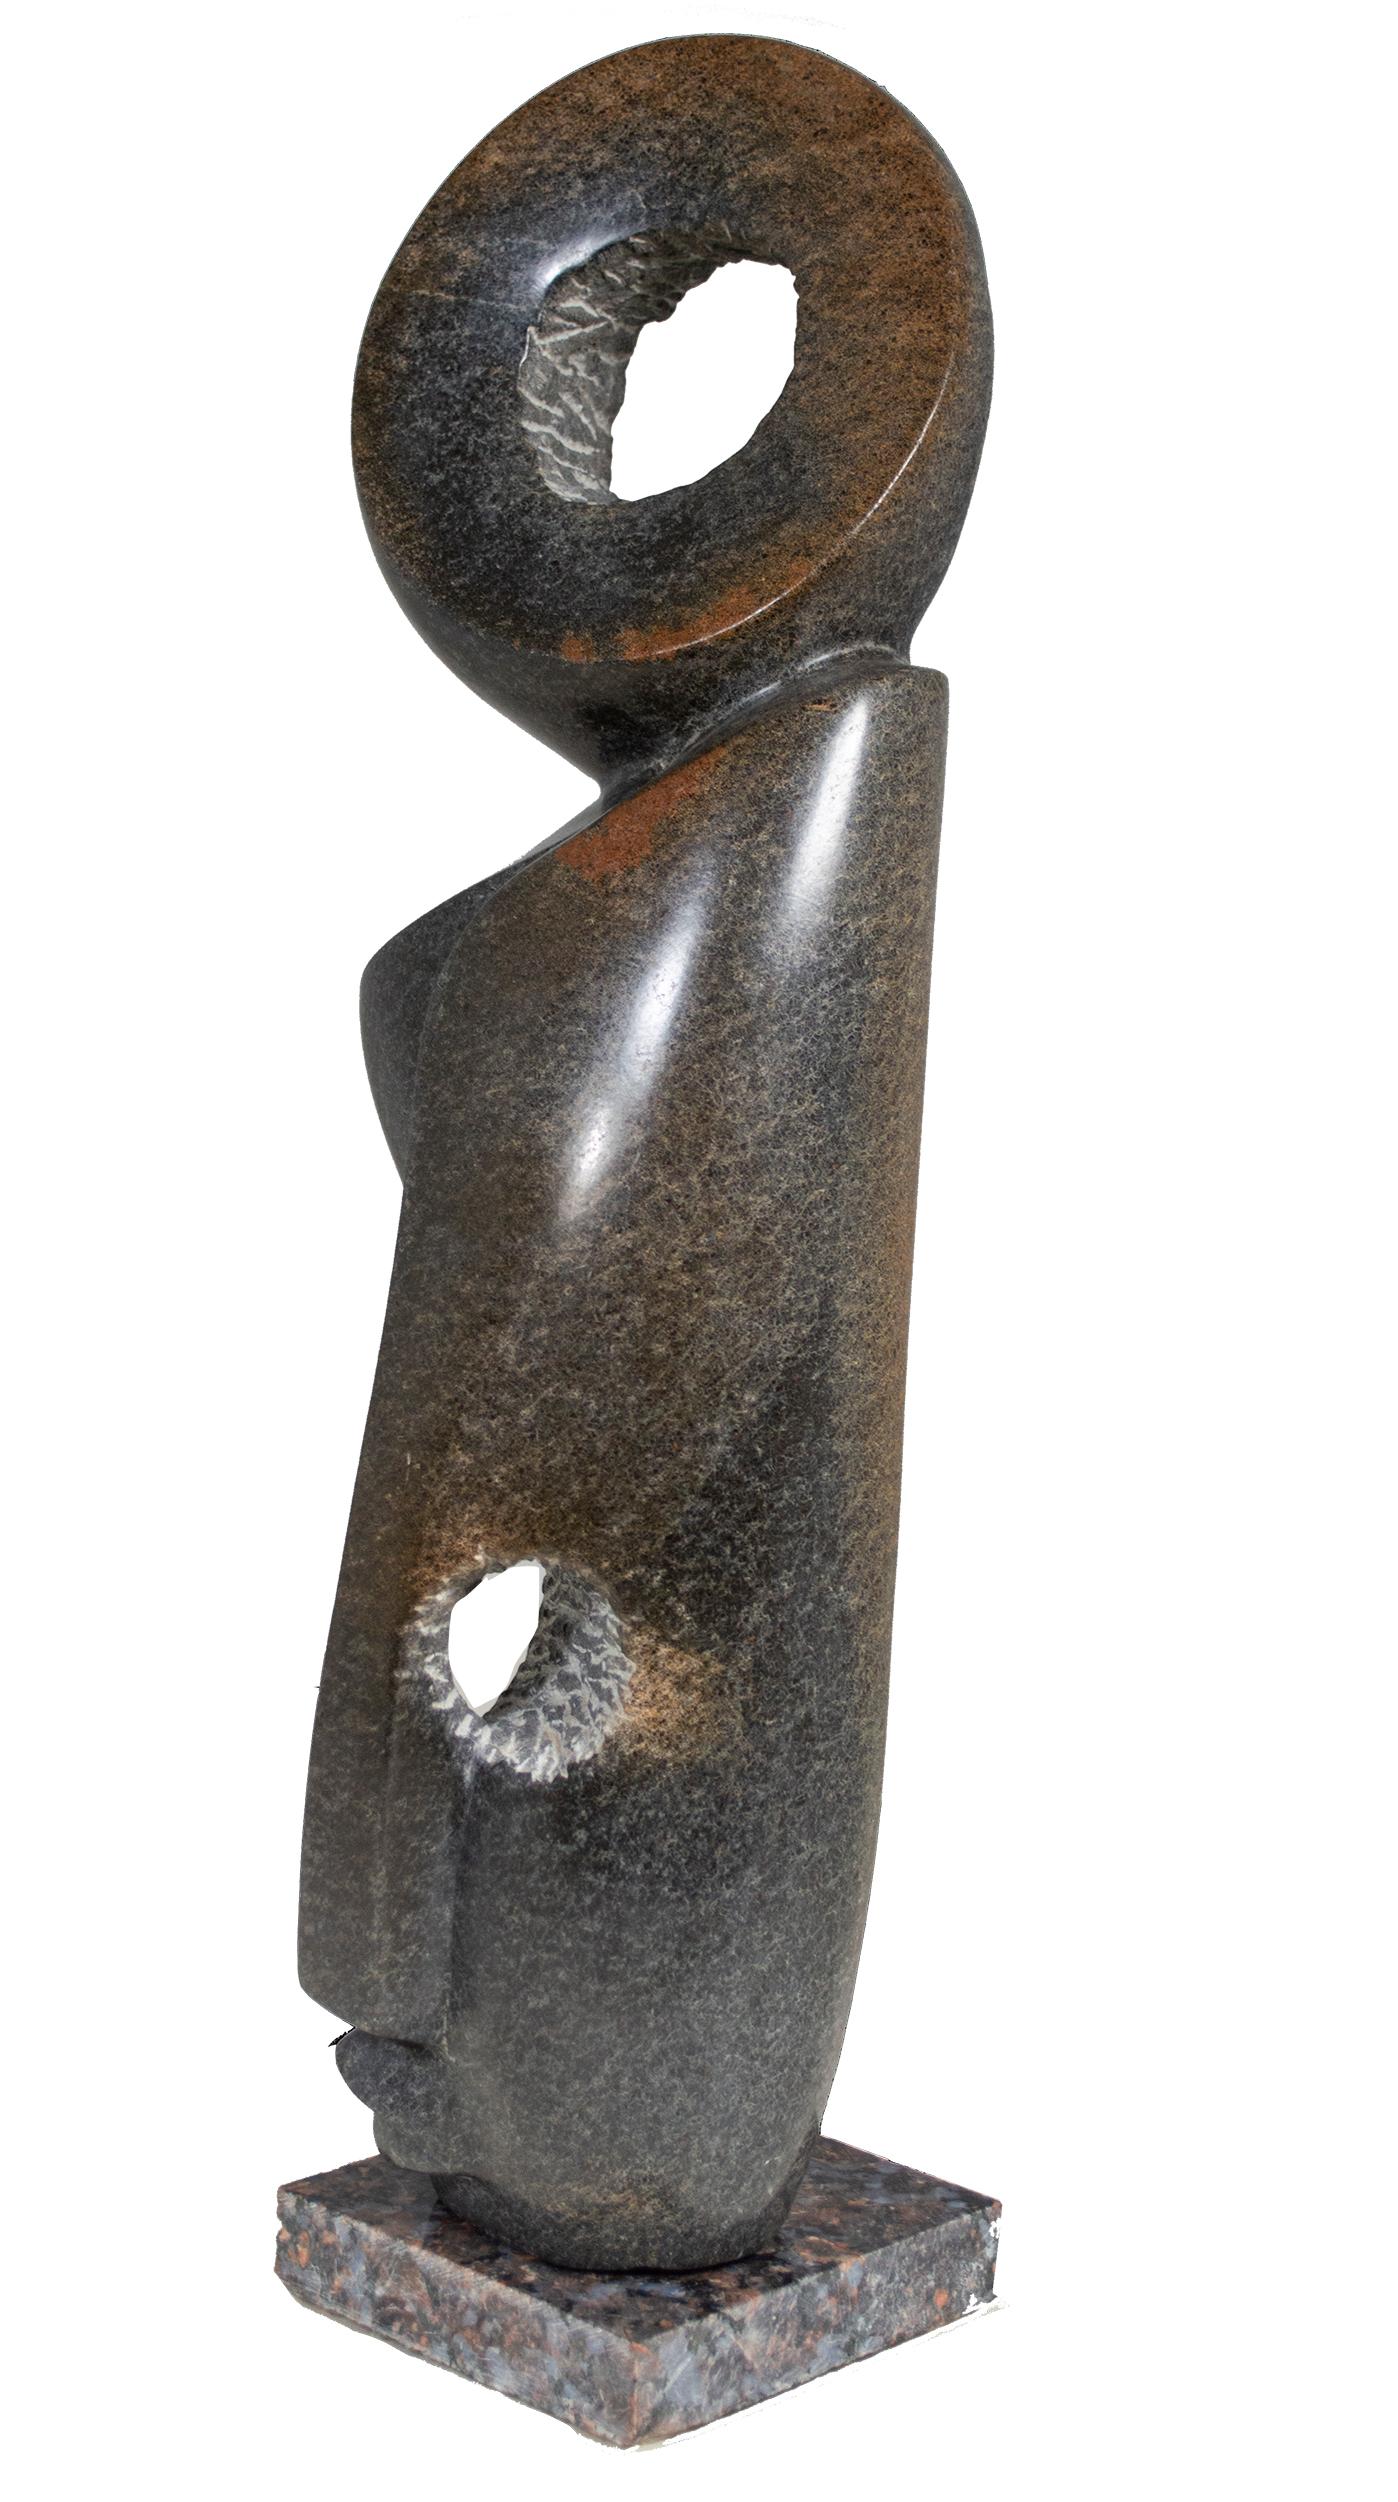 Sculpture originale Shona en pierre « Protégé par les Esprits » de Marowa & Chideu - Noir Figurative Sculpture par Tendai Marowa & Stanley Chideu